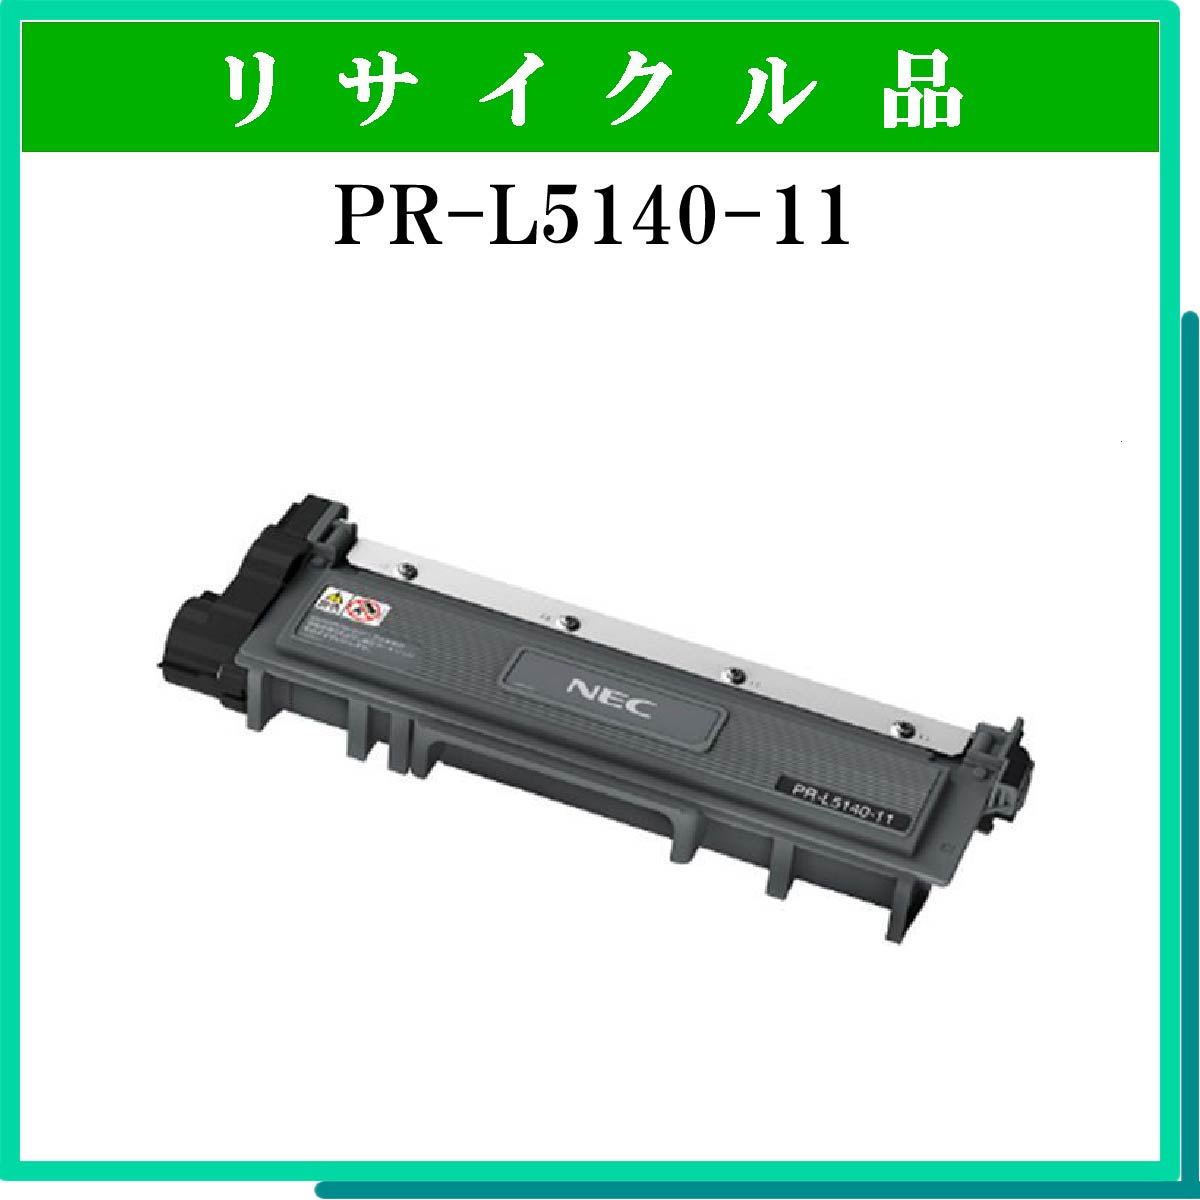 PR-L5140-11